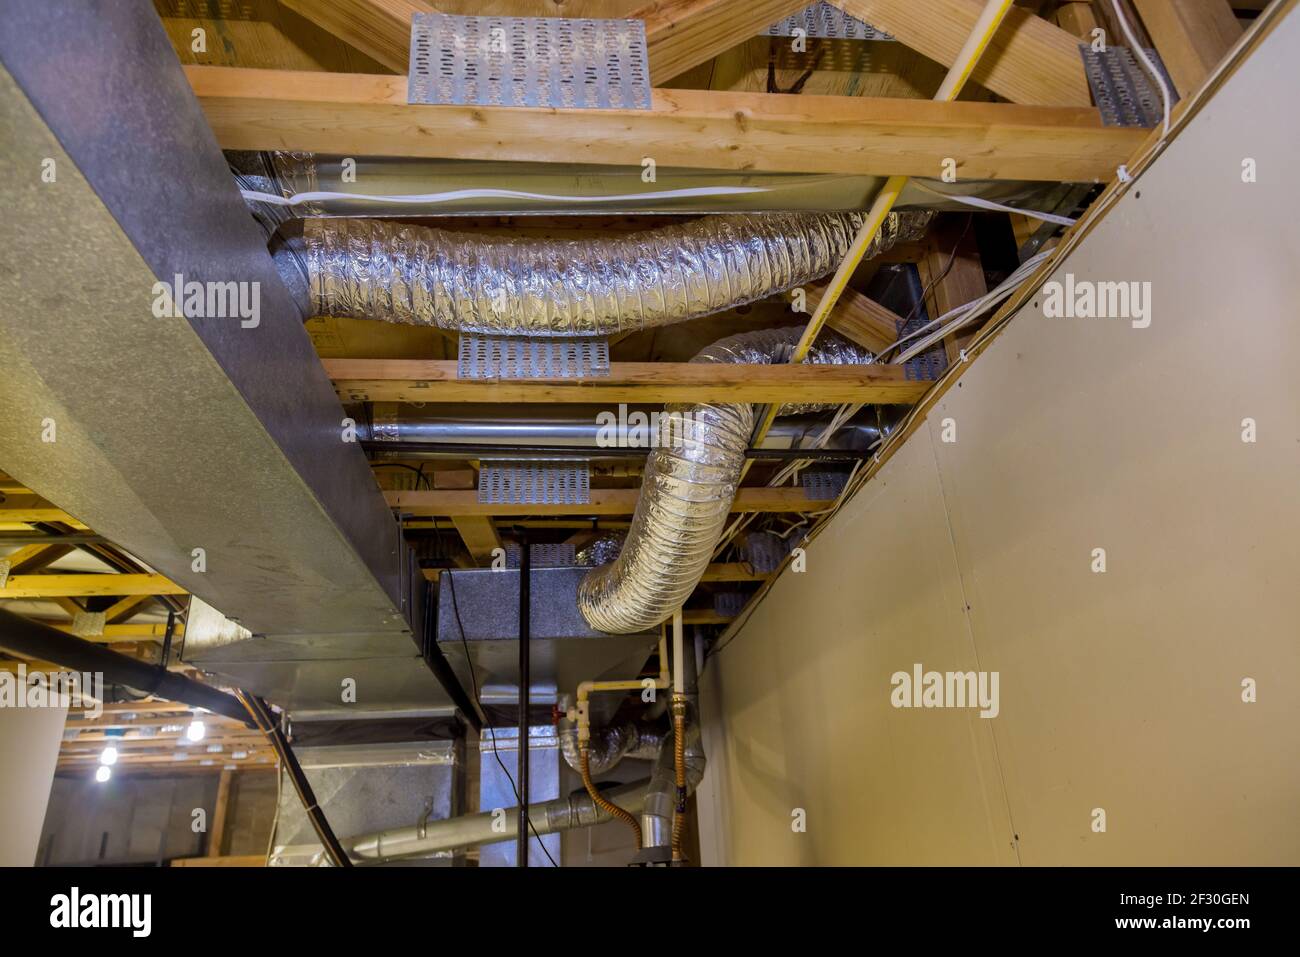 Gerahmte Haus Installation von Klimaanlage und Heizung Kanalarbeit in Decke Stockfoto